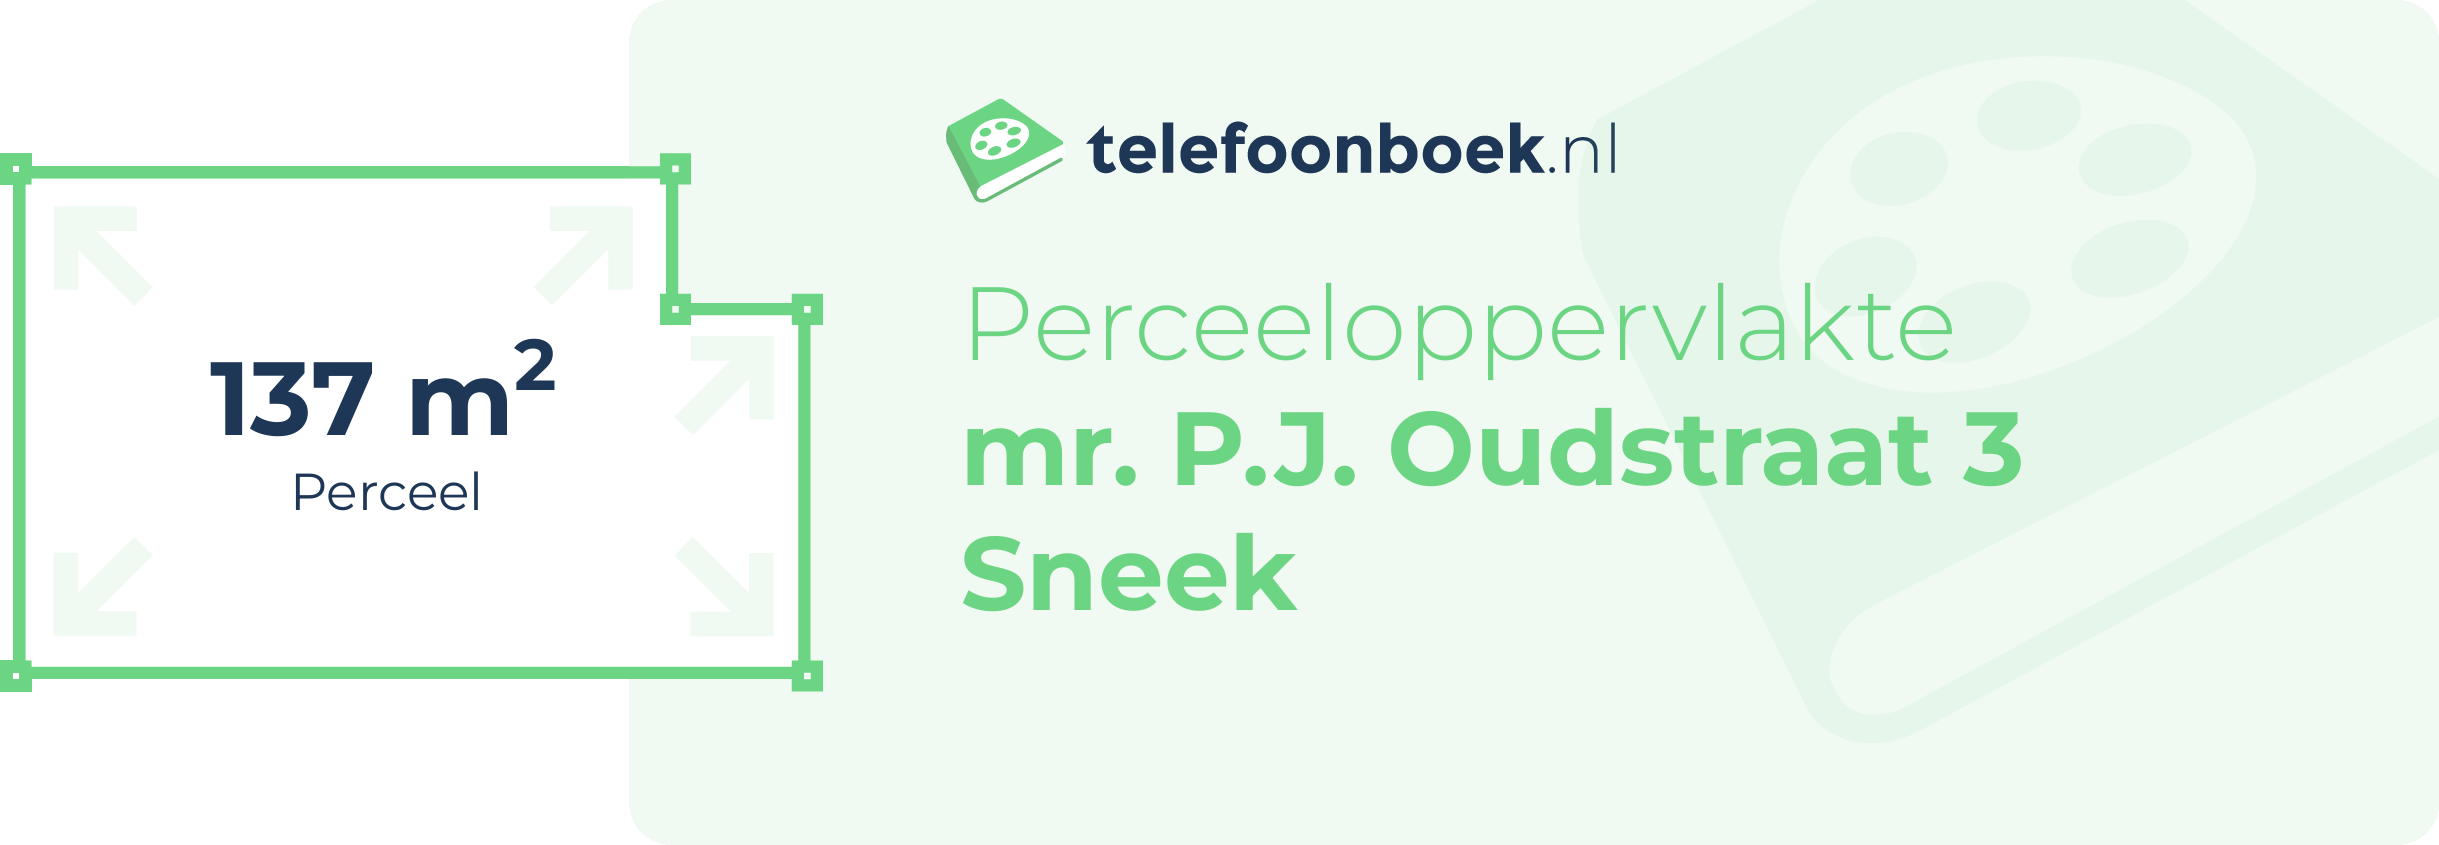 Perceeloppervlakte Mr. P.J. Oudstraat 3 Sneek